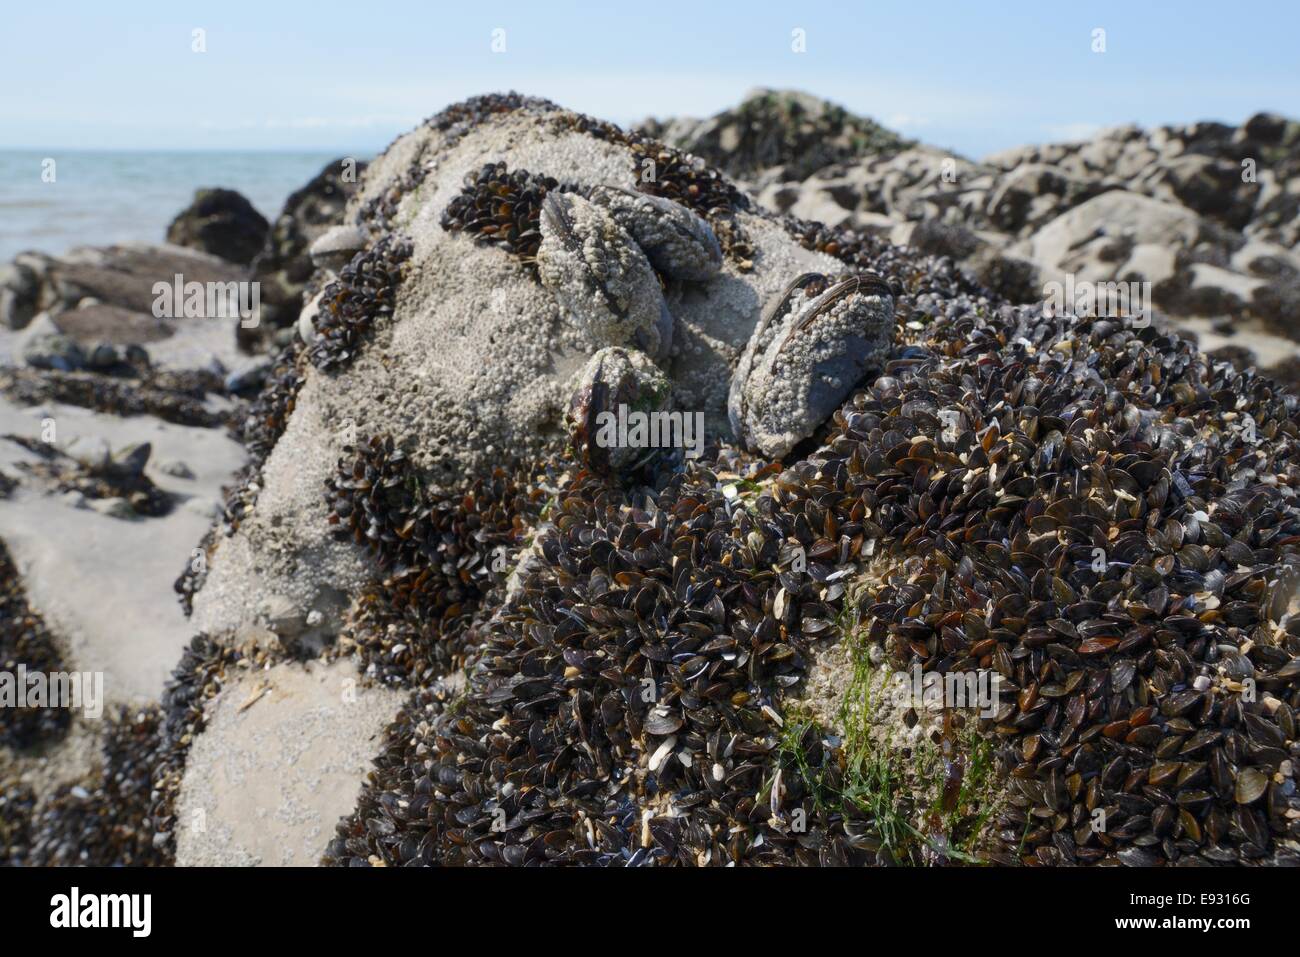 Recentemente risolta comune giovani Mitili (Mytilus edulis) accanto a barnacle incrostati di adulti sulle rocce esposte su una spiaggia rocciosa. Foto Stock